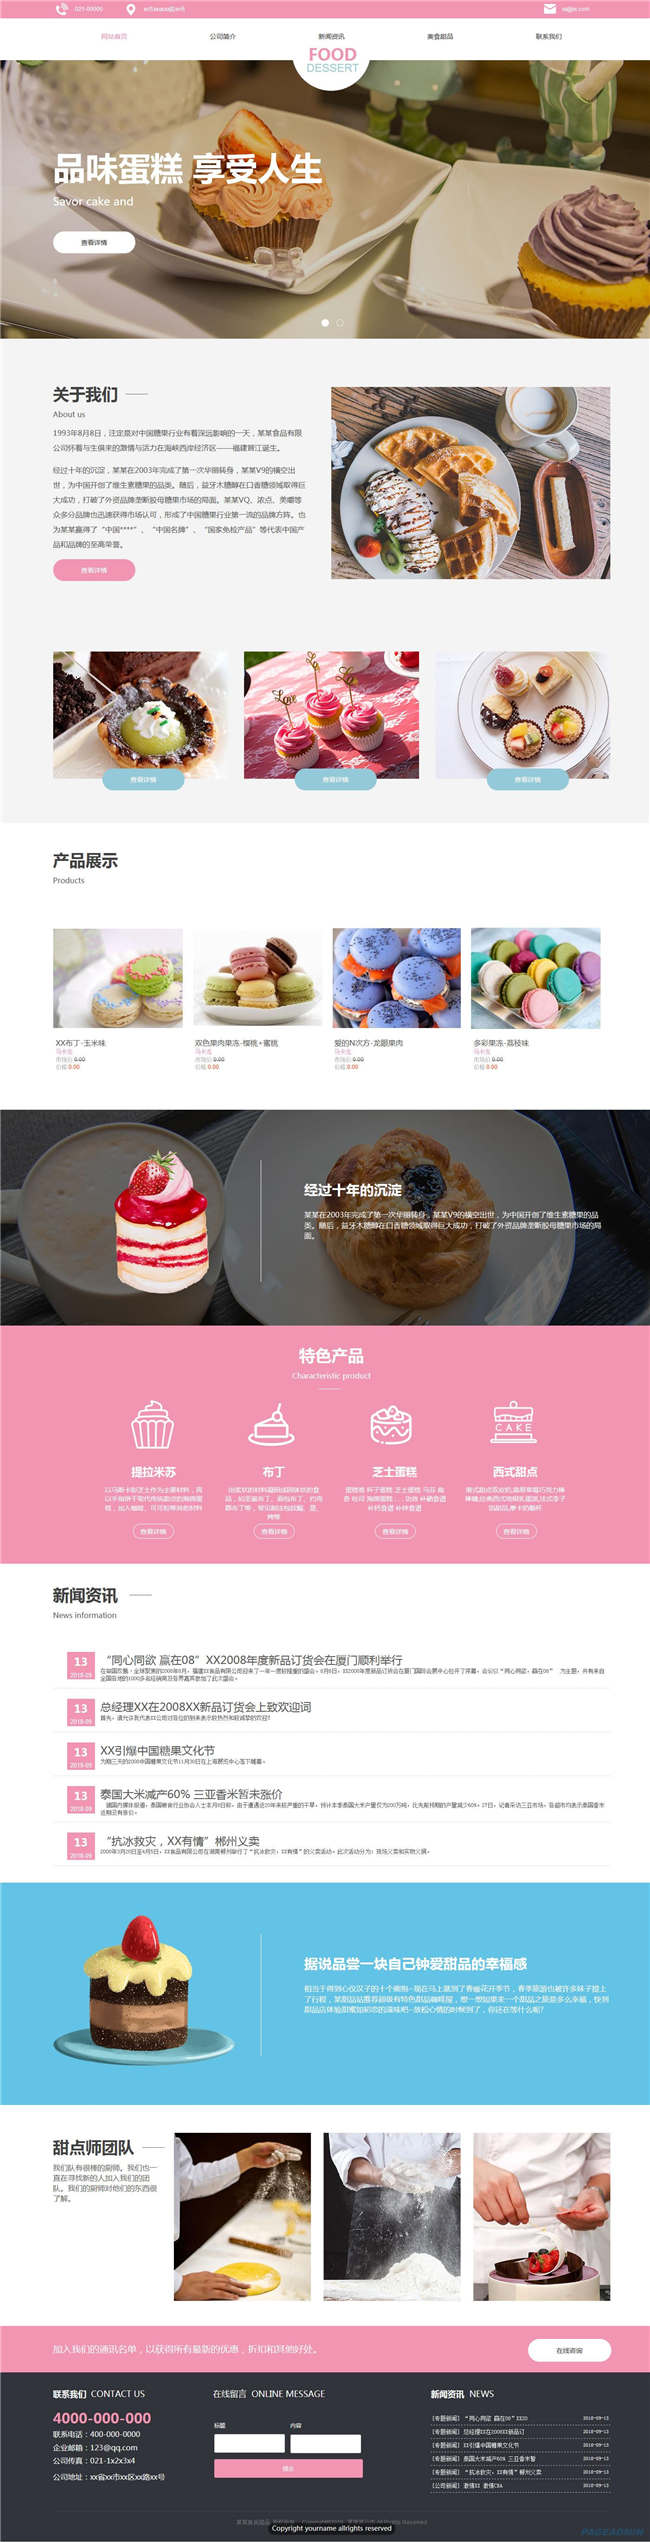 蛋糕店食品饮料生鲜茶酒网站模板源码下载演示图